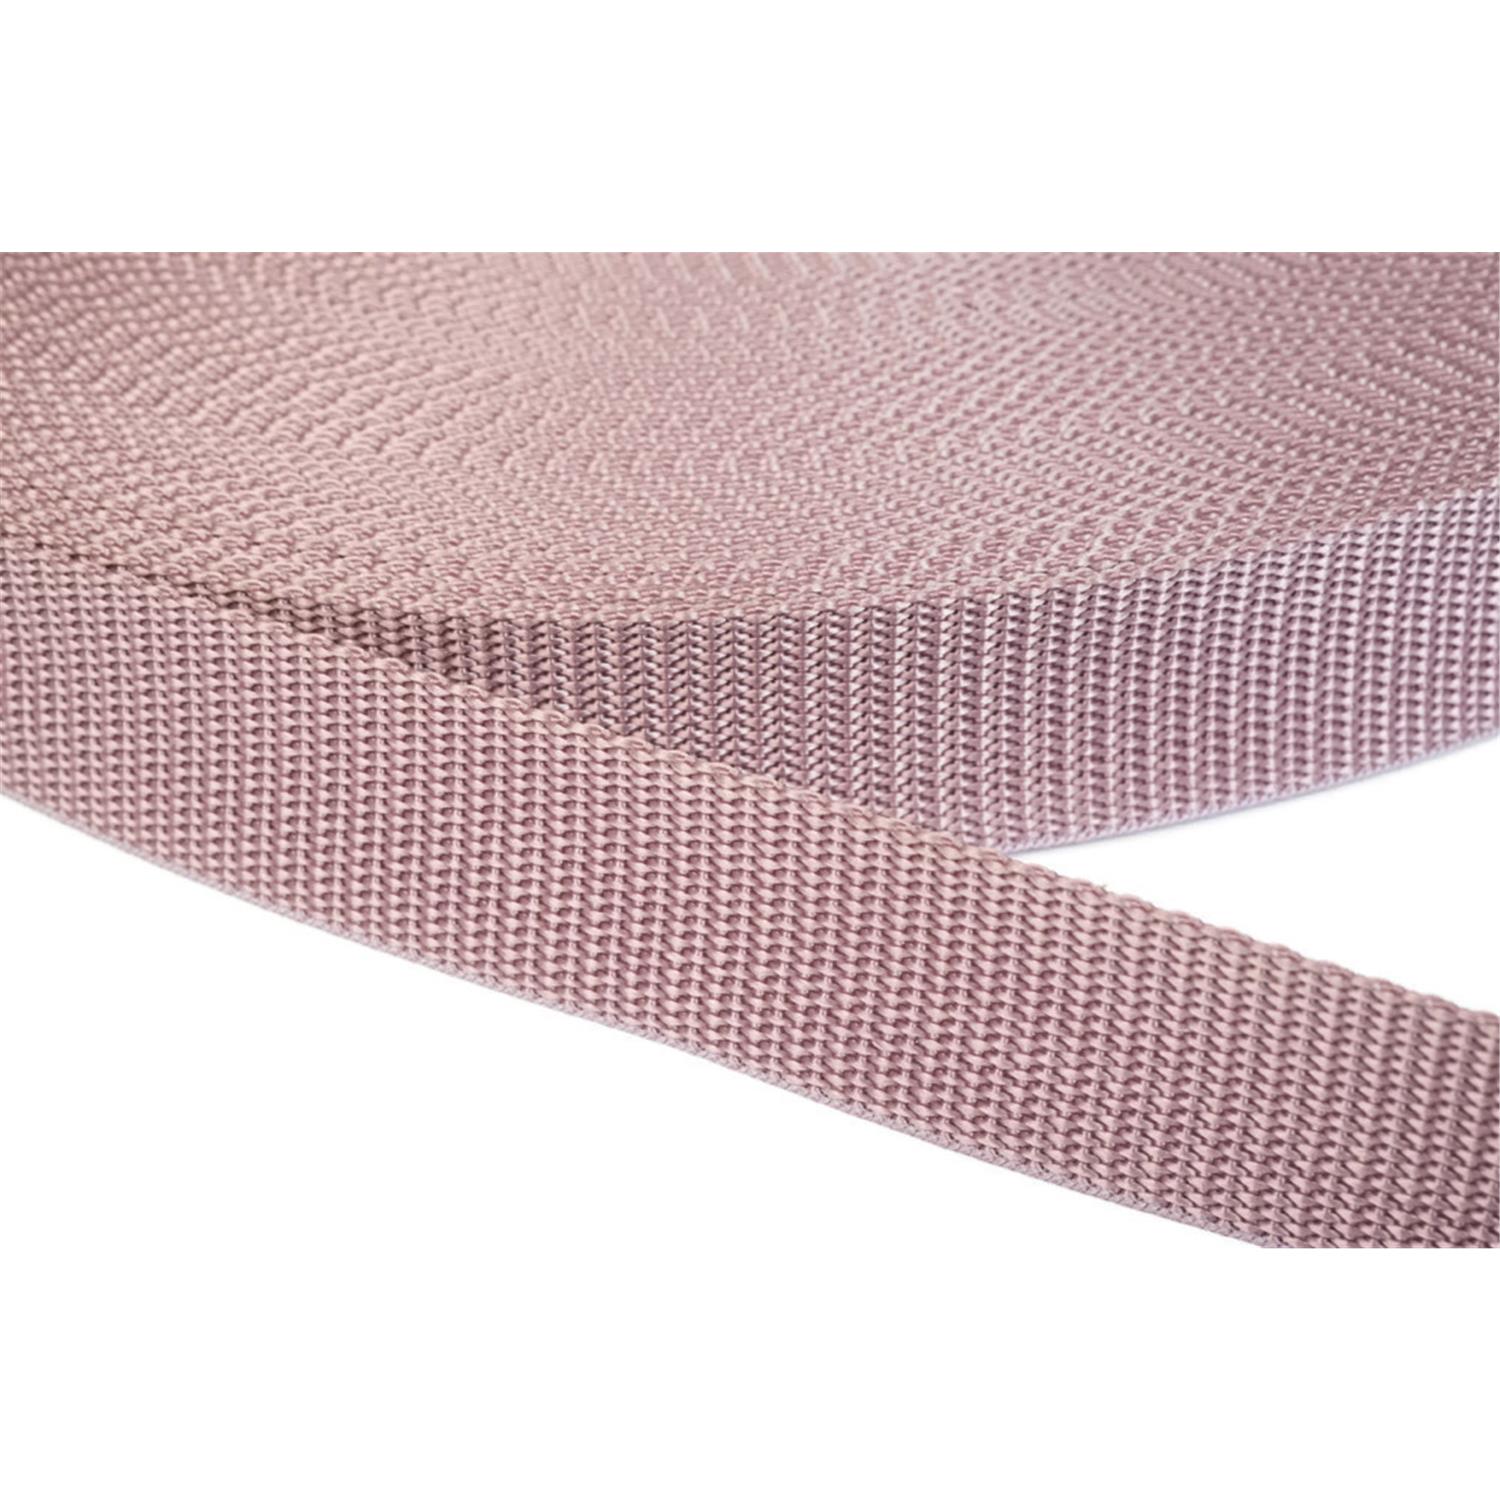 Gurtband 20mm breit aus Polypropylen in 41 Farben 15 - altrosa 50 Meter